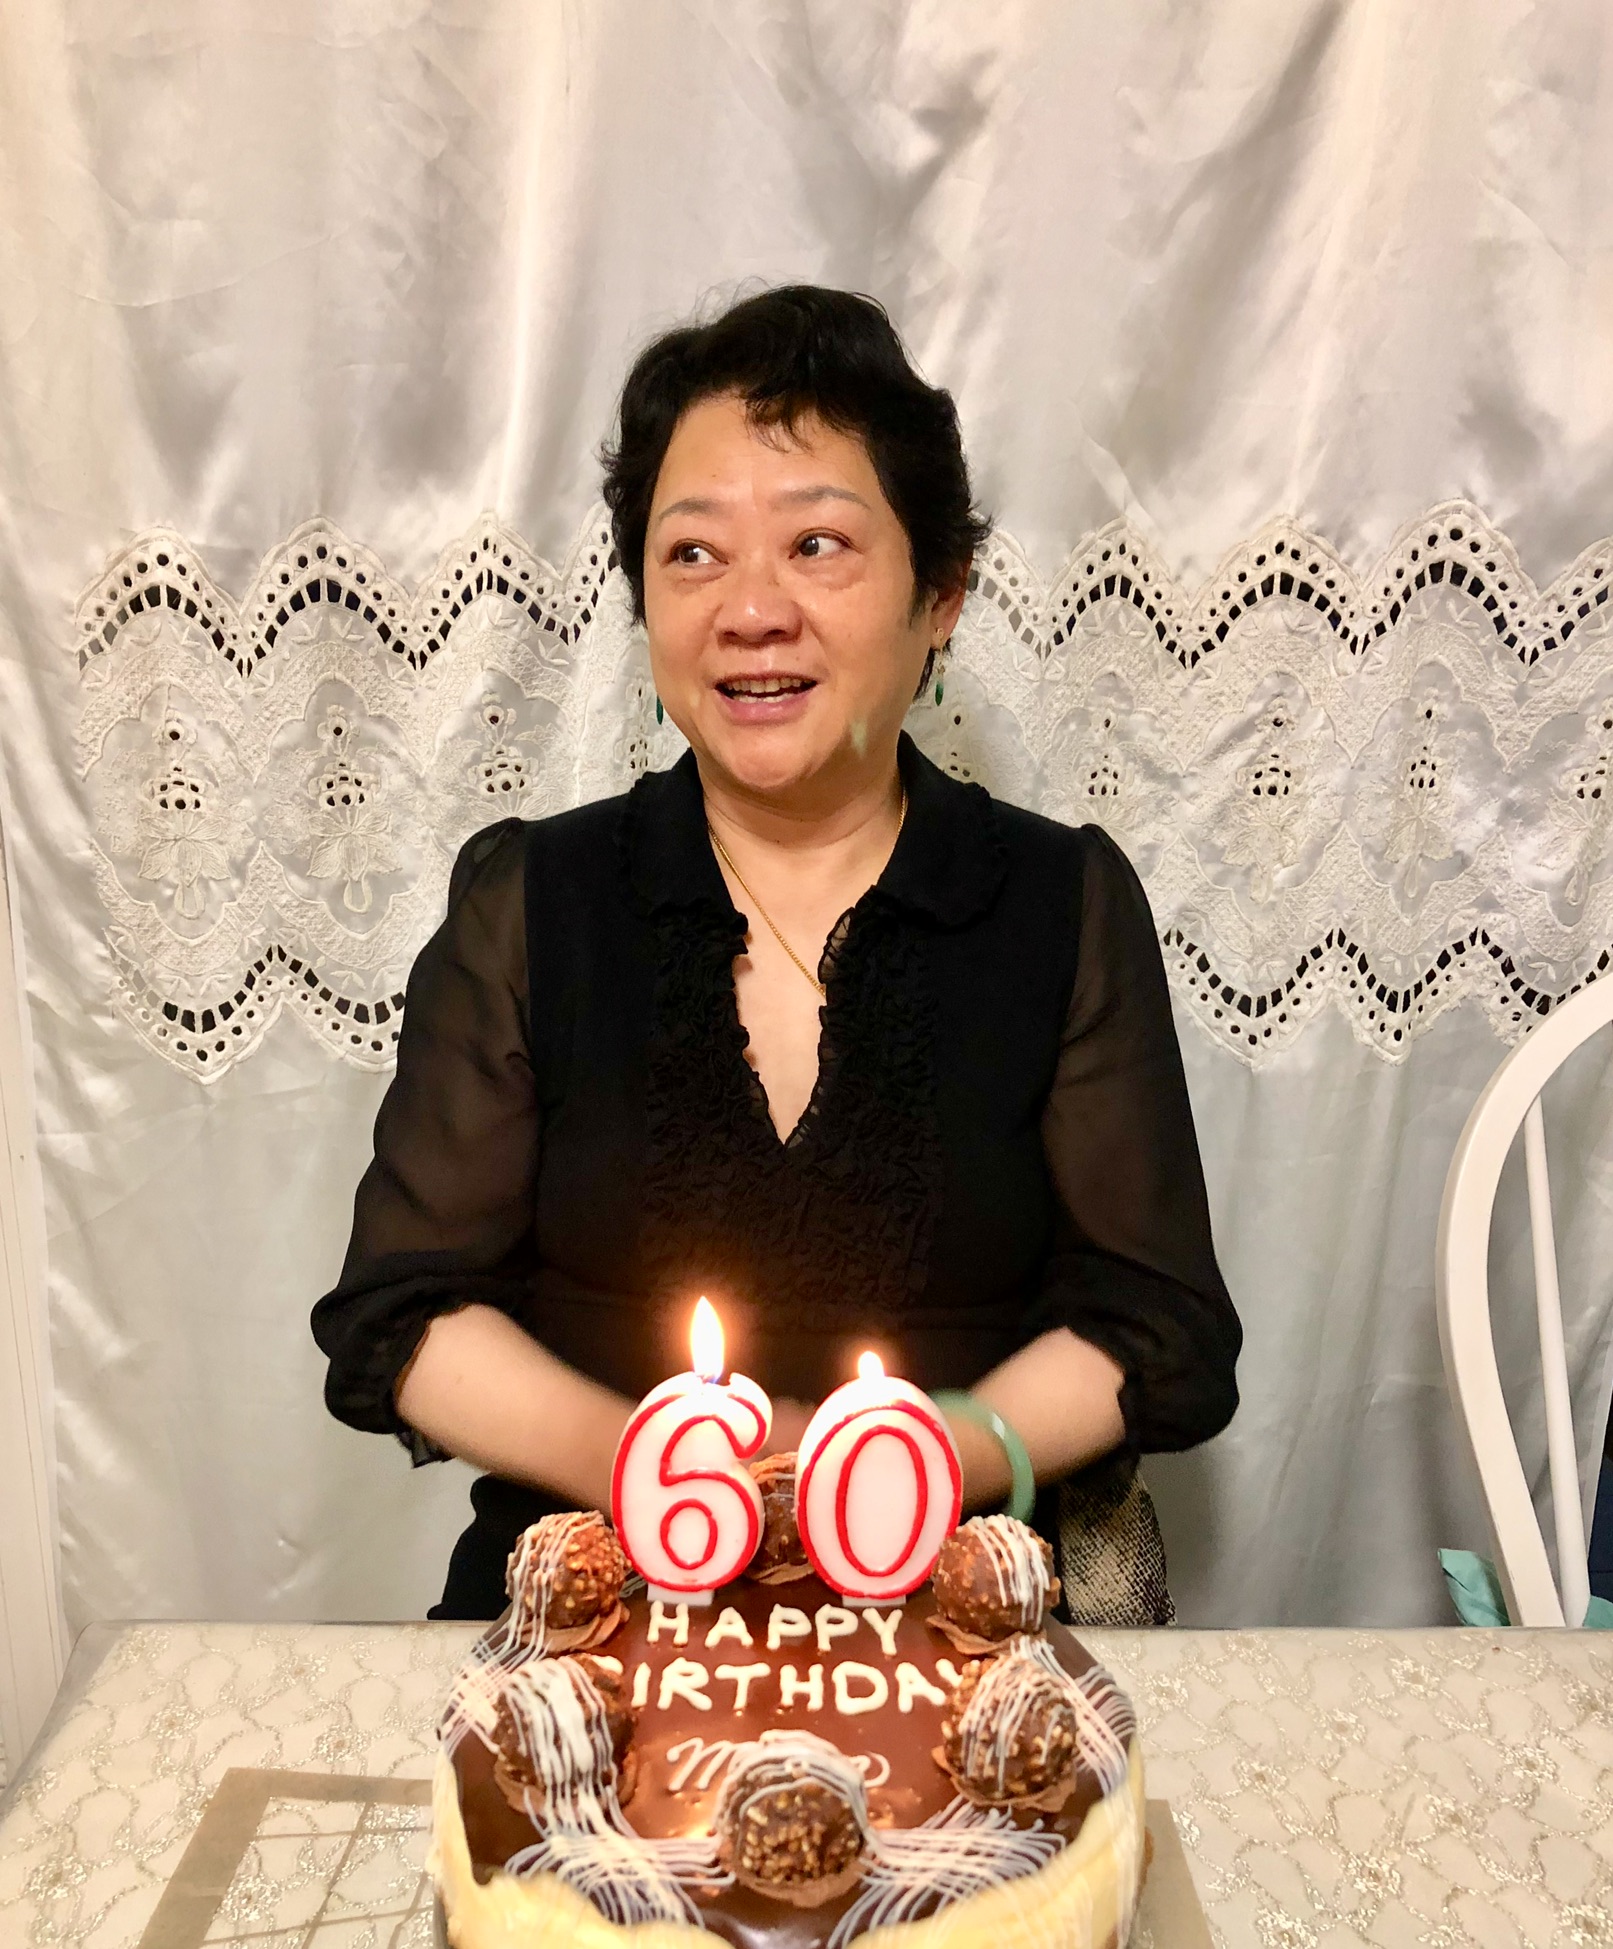 2018年庆祝六十岁生日照片